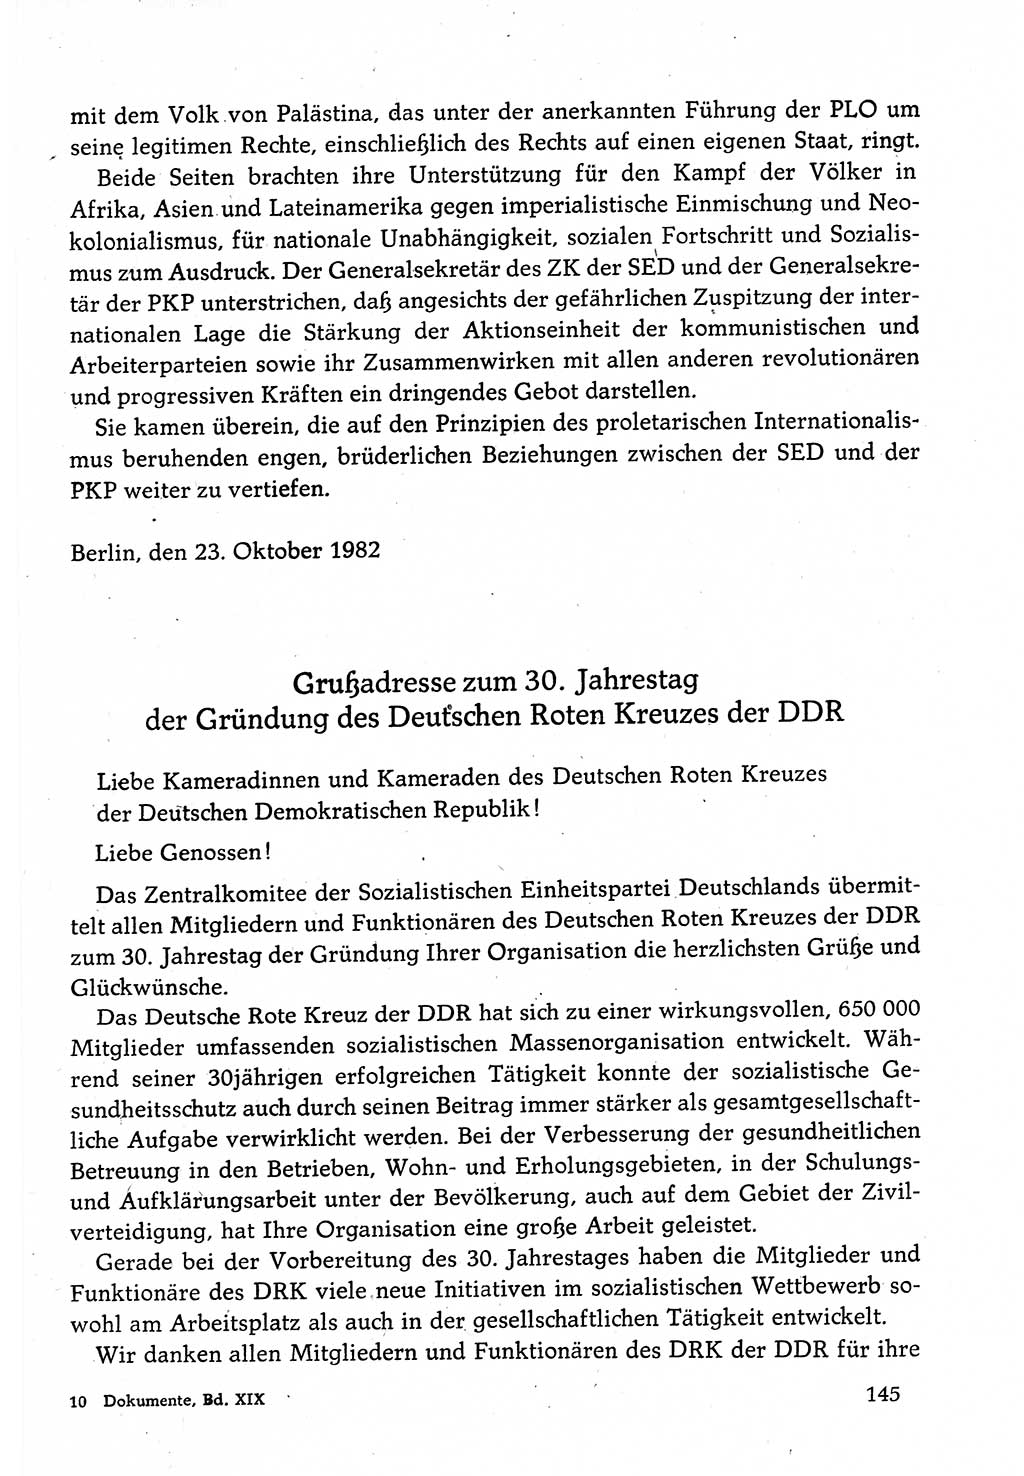 Dokumente der Sozialistischen Einheitspartei Deutschlands (SED) [Deutsche Demokratische Republik (DDR)] 1982-1983, Seite 145 (Dok. SED DDR 1982-1983, S. 145)